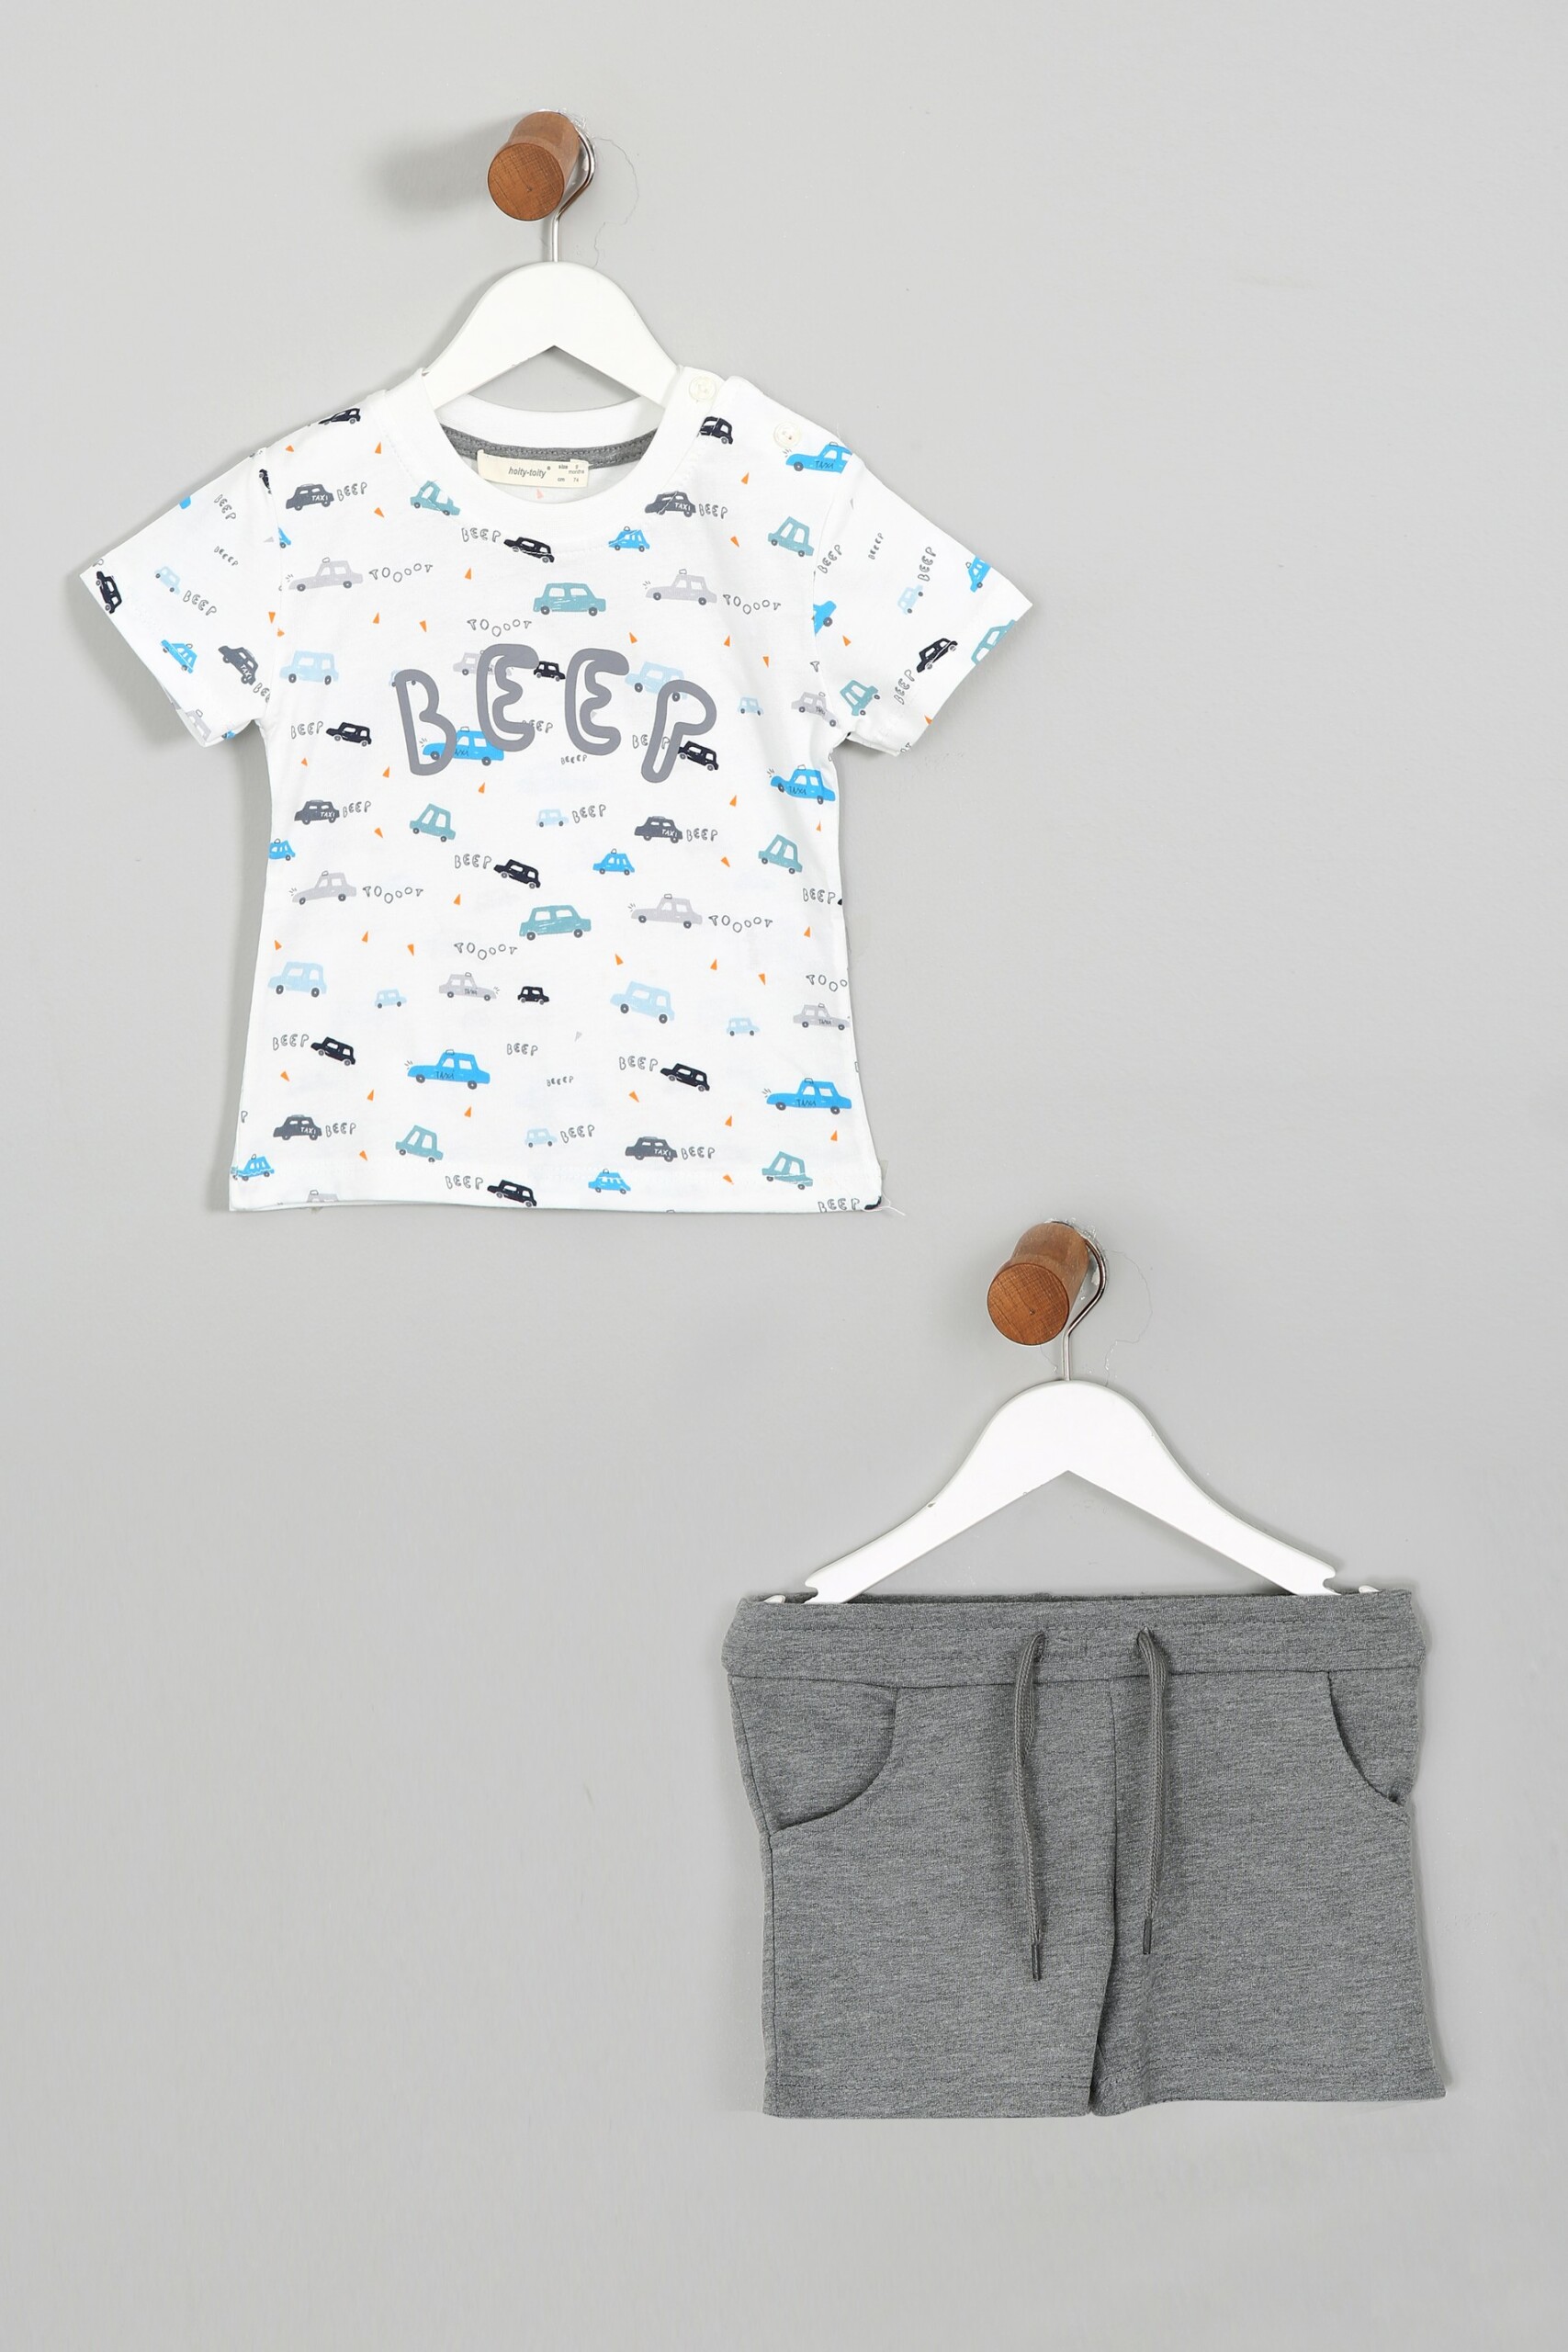 Boy And Baby Boy Car Printed 2 Pieces Set (T-Shirt - Shorts) / 9-12 M | 12-18 M | 18-24 M | 2-3 Y - Kids Fashion Turkey